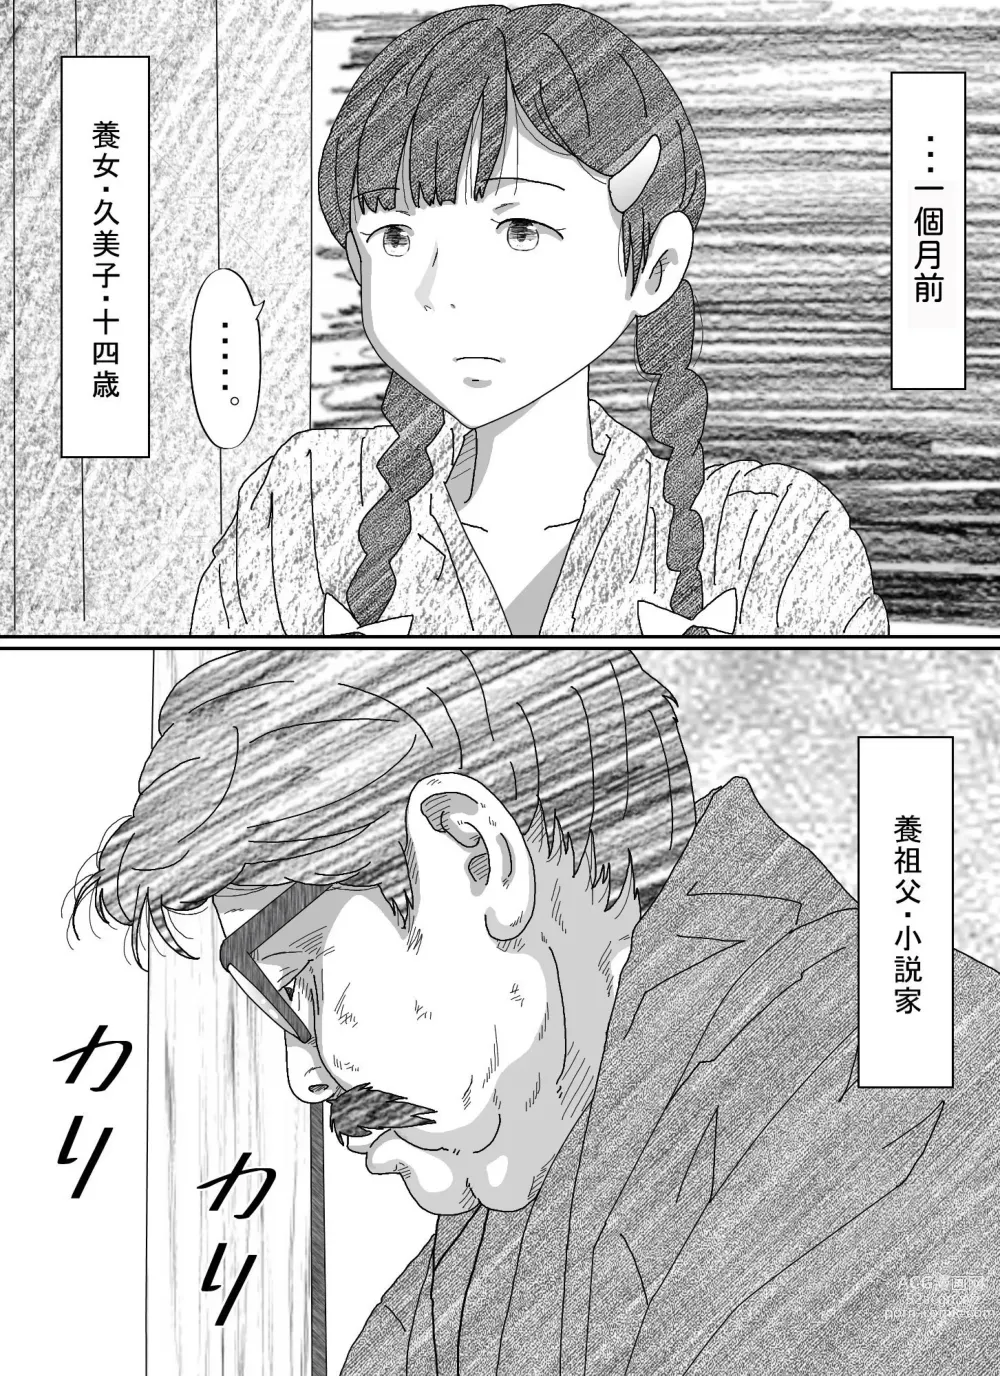 Page 6 of doujinshi Youzyo・ Kumiko